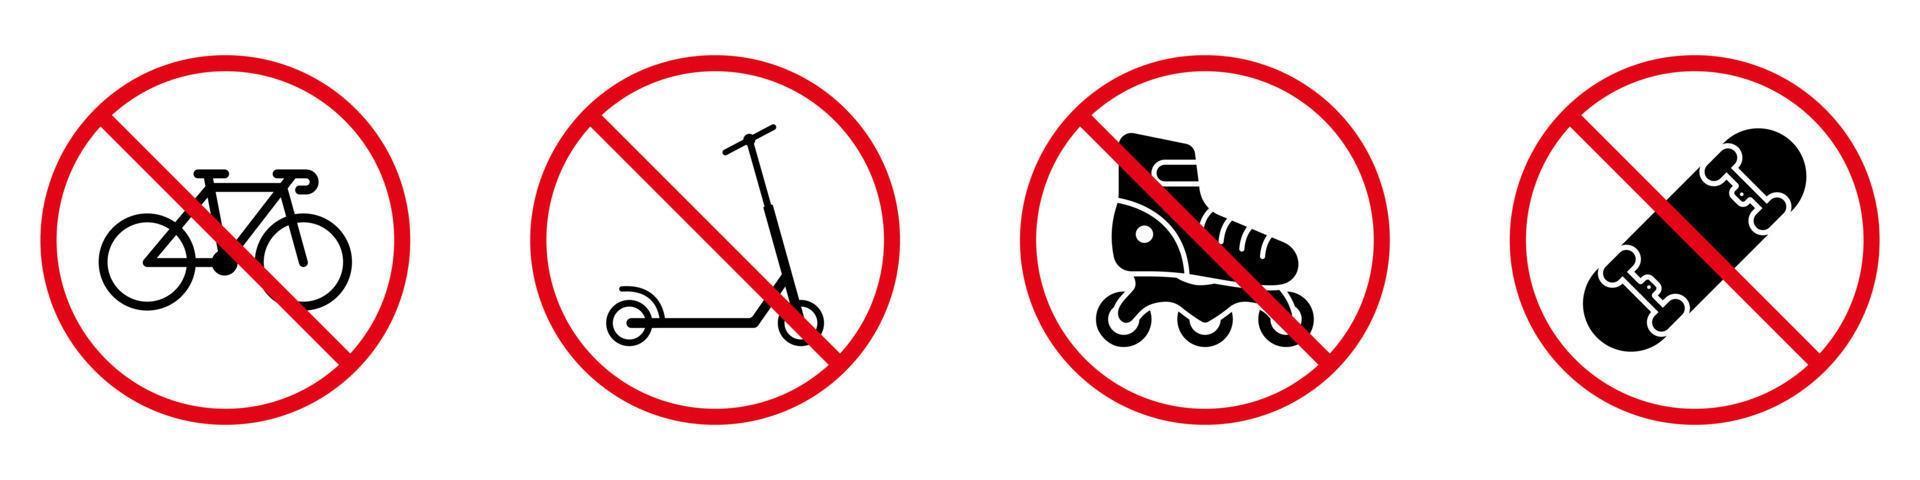 vietare il trasporto a spinta su ruote. divieto di pattino a rotelle skate board kick scooter bici silhouette nera icon set. vietare il pittogramma di pattini a rotelle. nessun segnale di stop rosso per biciclette consentito. illustrazione vettoriale isolata.